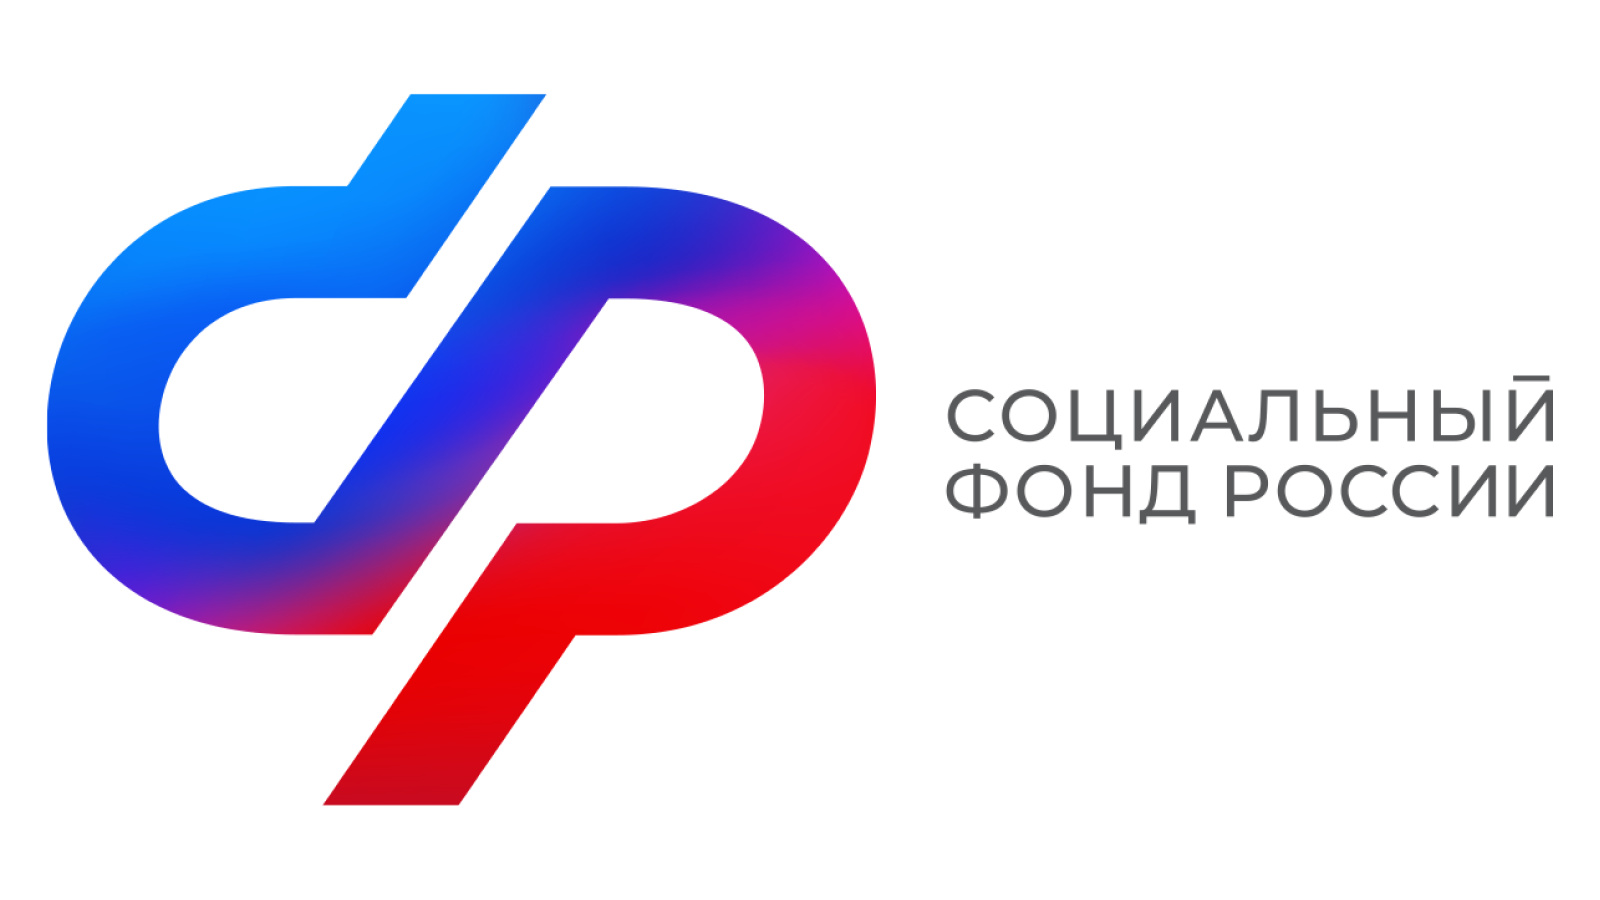 Более 65 тысяч федеральных льготников в Воронежской области получают набор социальных услуг в натуральном виде.